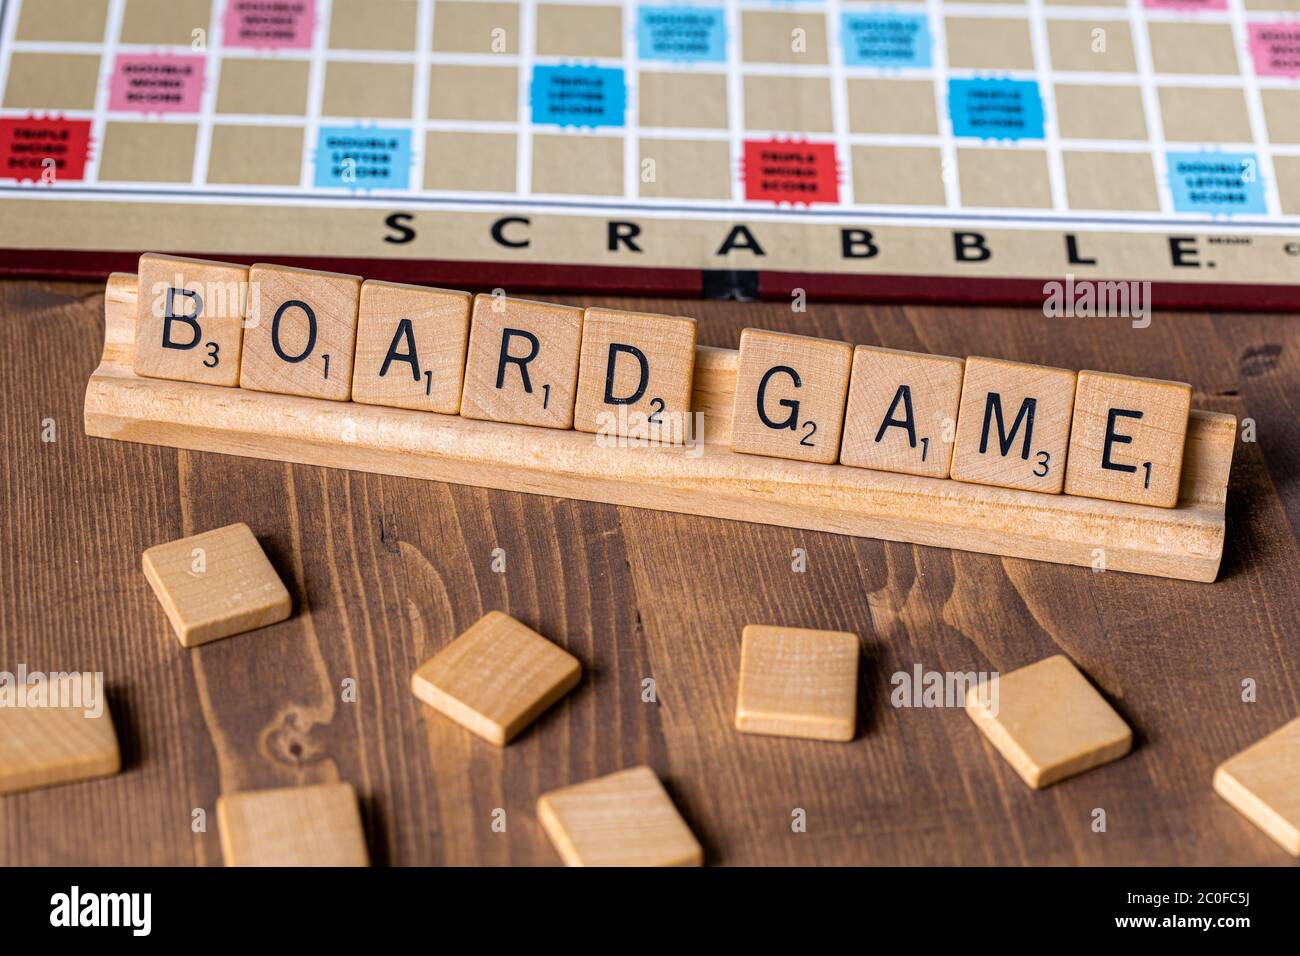 Jeu de société Scrabble avec l'orthographe scrabble en mosaïque 'jeu de société' sur le plateau de table Banque D'Images